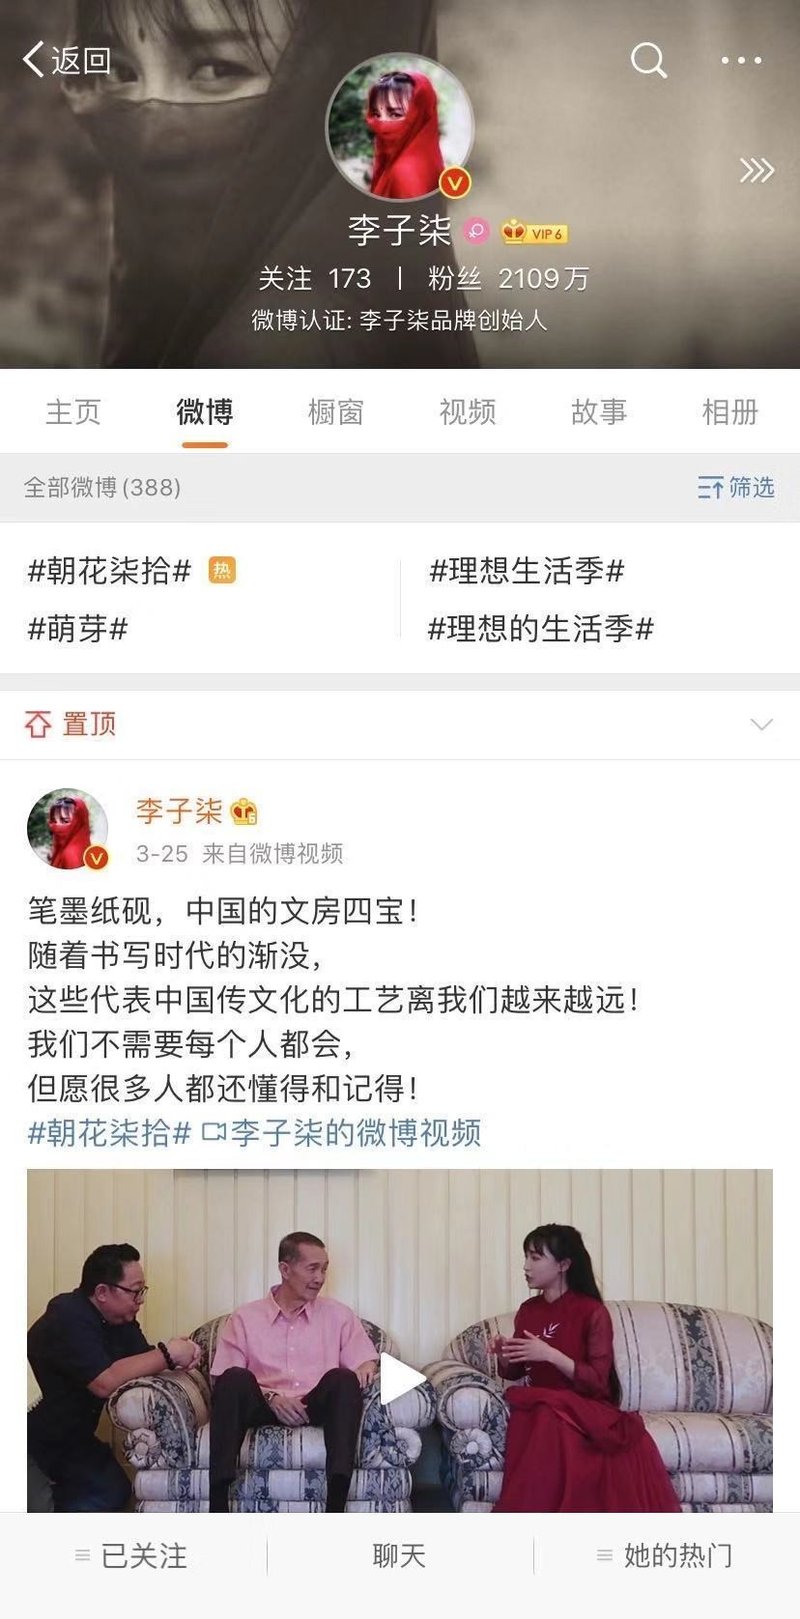 李子柒 中国の田舎生活を動画配信するvloggerが世界中で注目されているわけ 中国情報局 北京オフィス